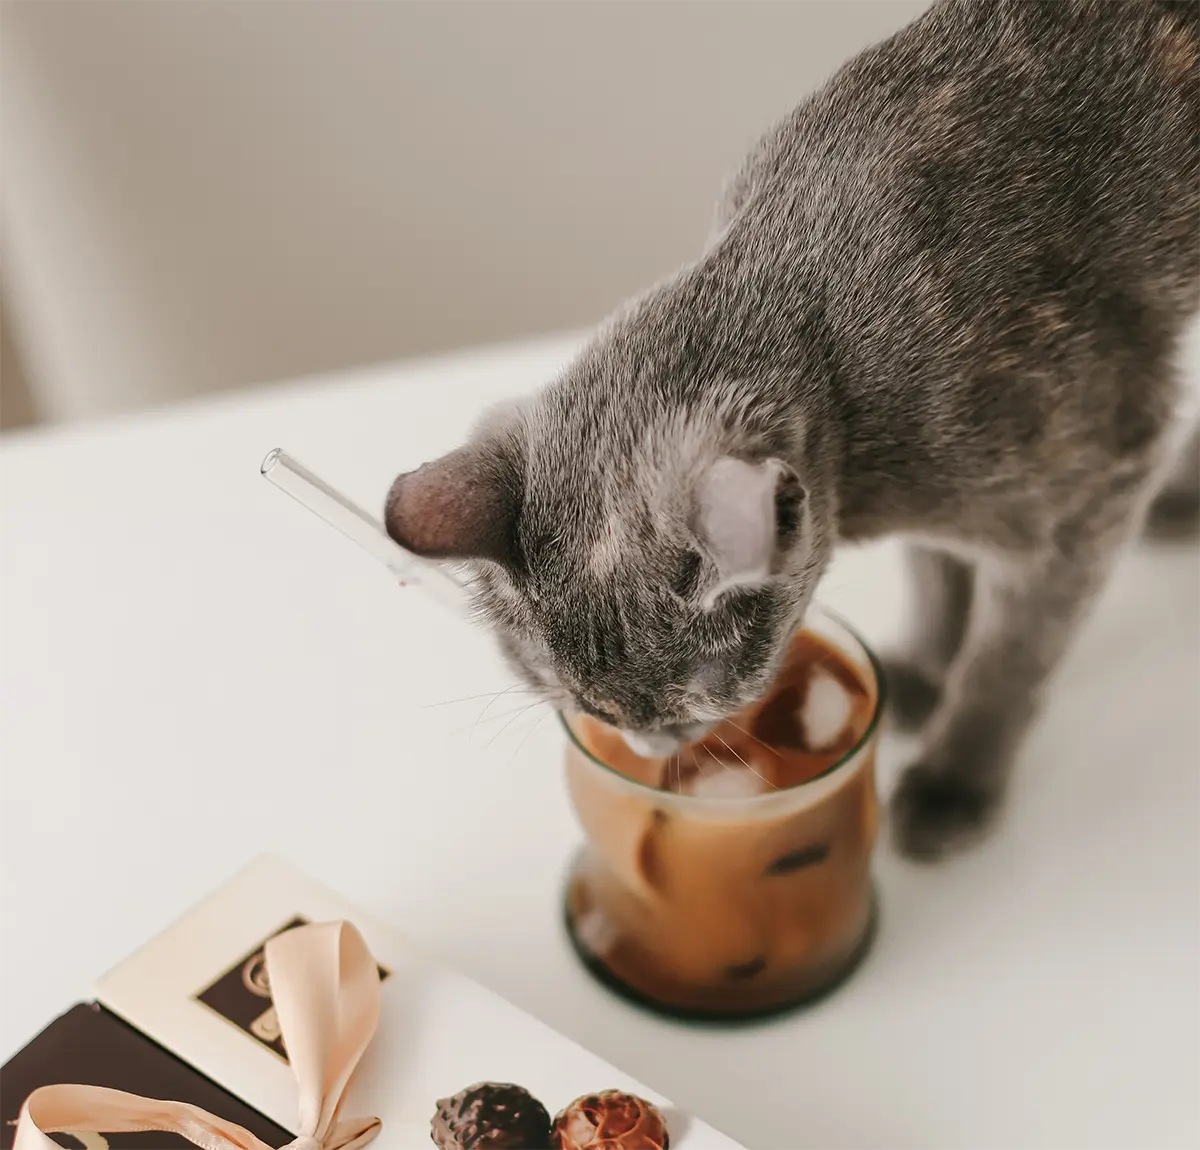 Quais alimentos humanos são tóxicos para os gatos?